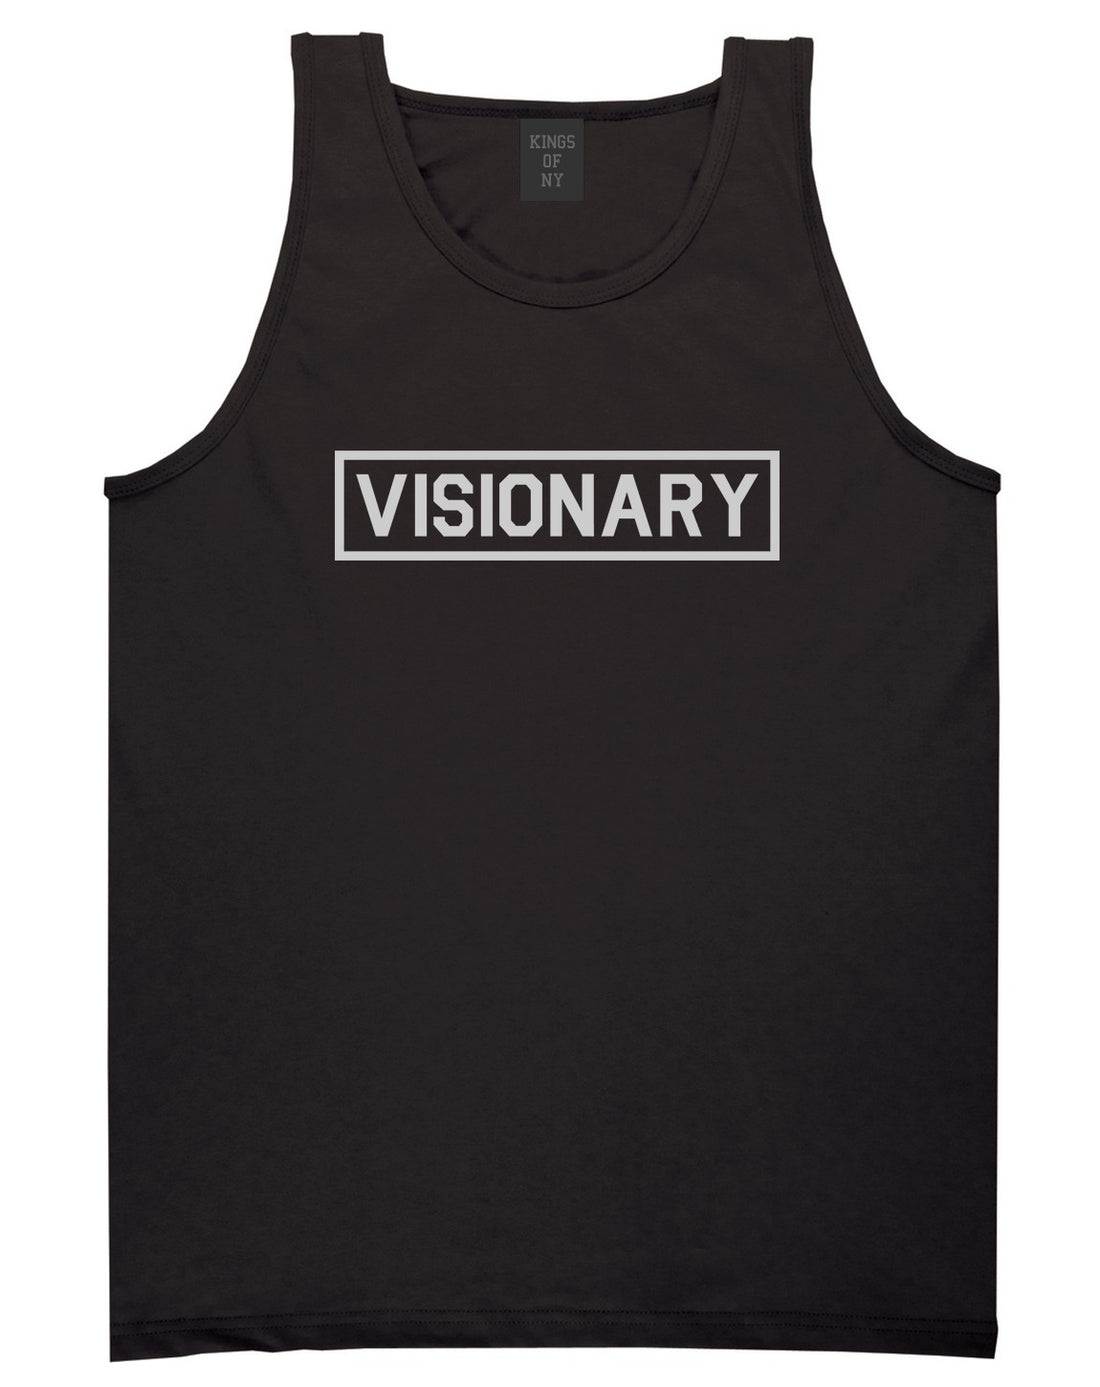 Visionary Box Mens Tank Top Shirt Black by Kings Of NY